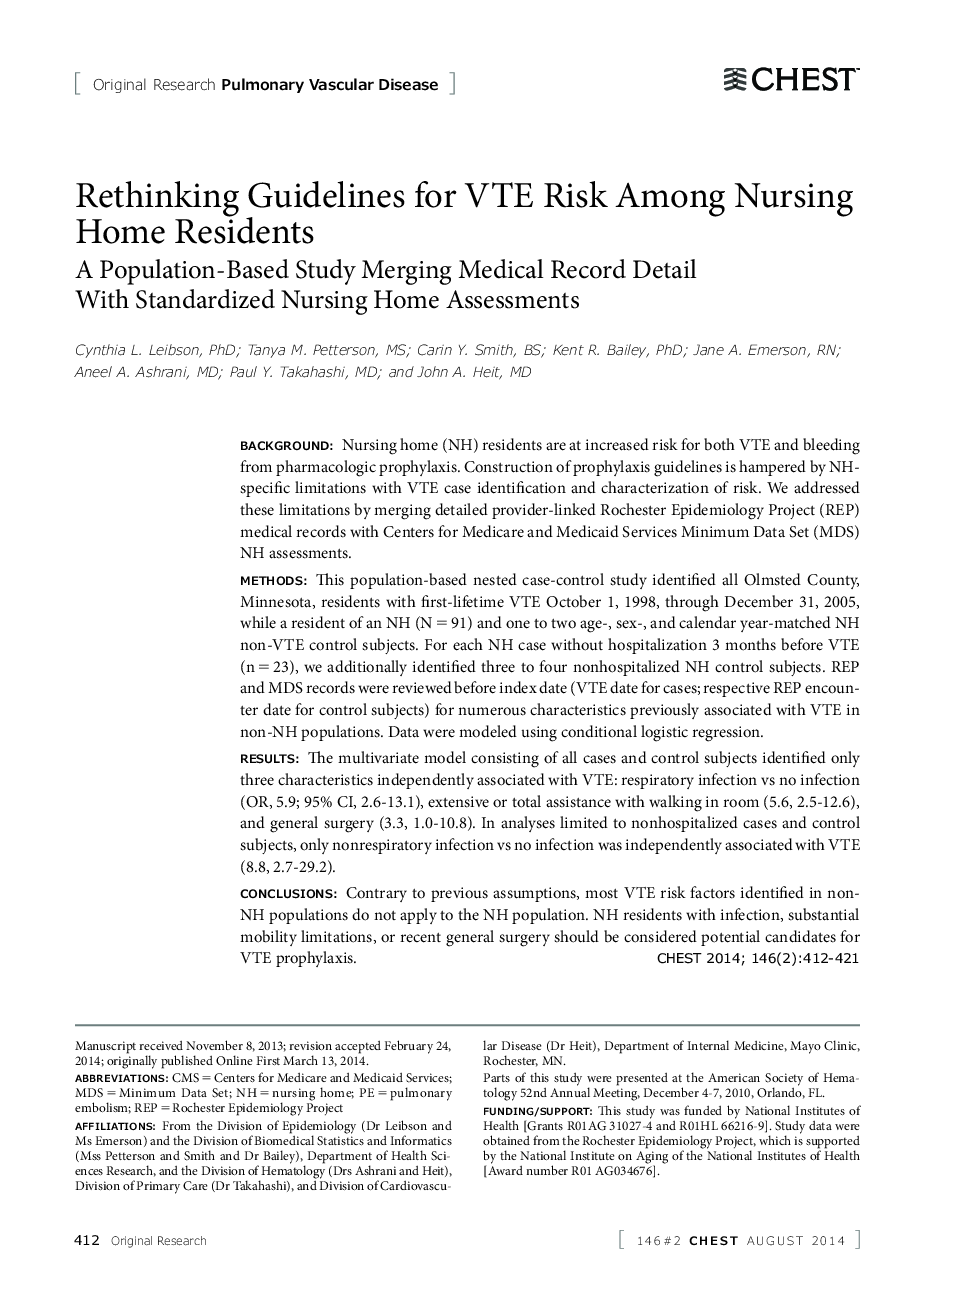 Rethinking Guidelines for VTE Risk Among Nursing Home Residents